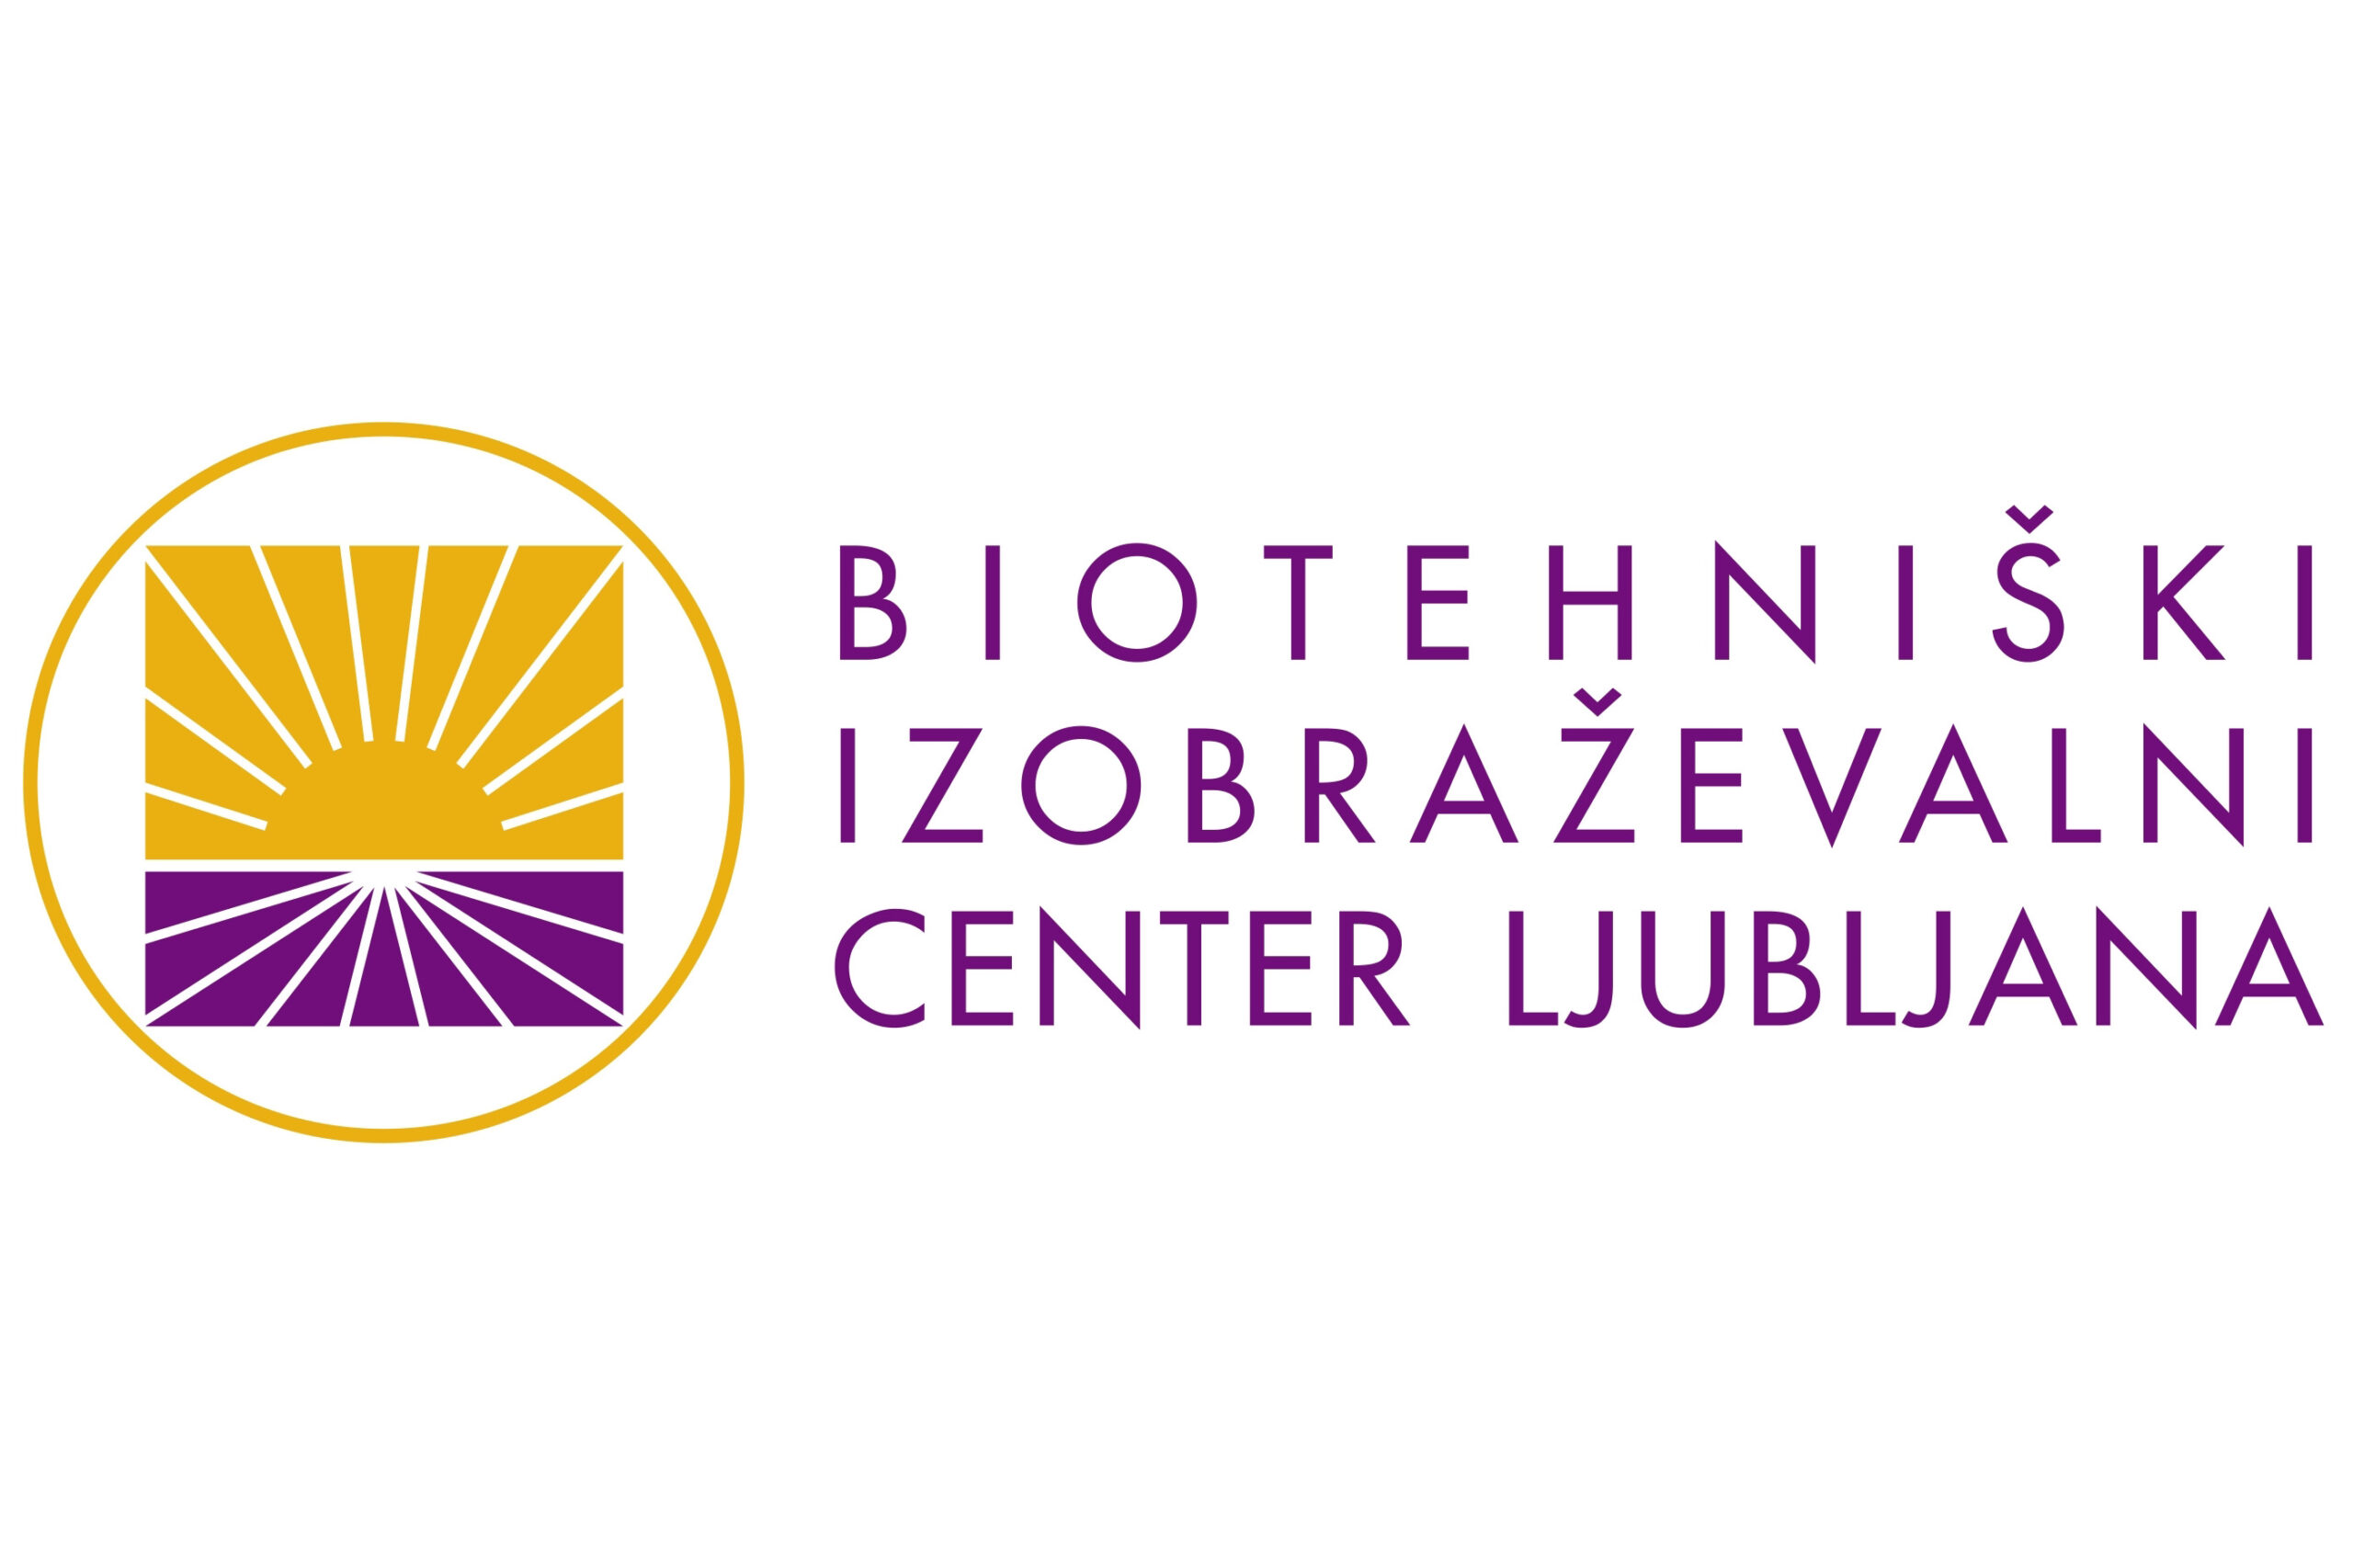 Biotehniški izobraževalni center Ljubljana